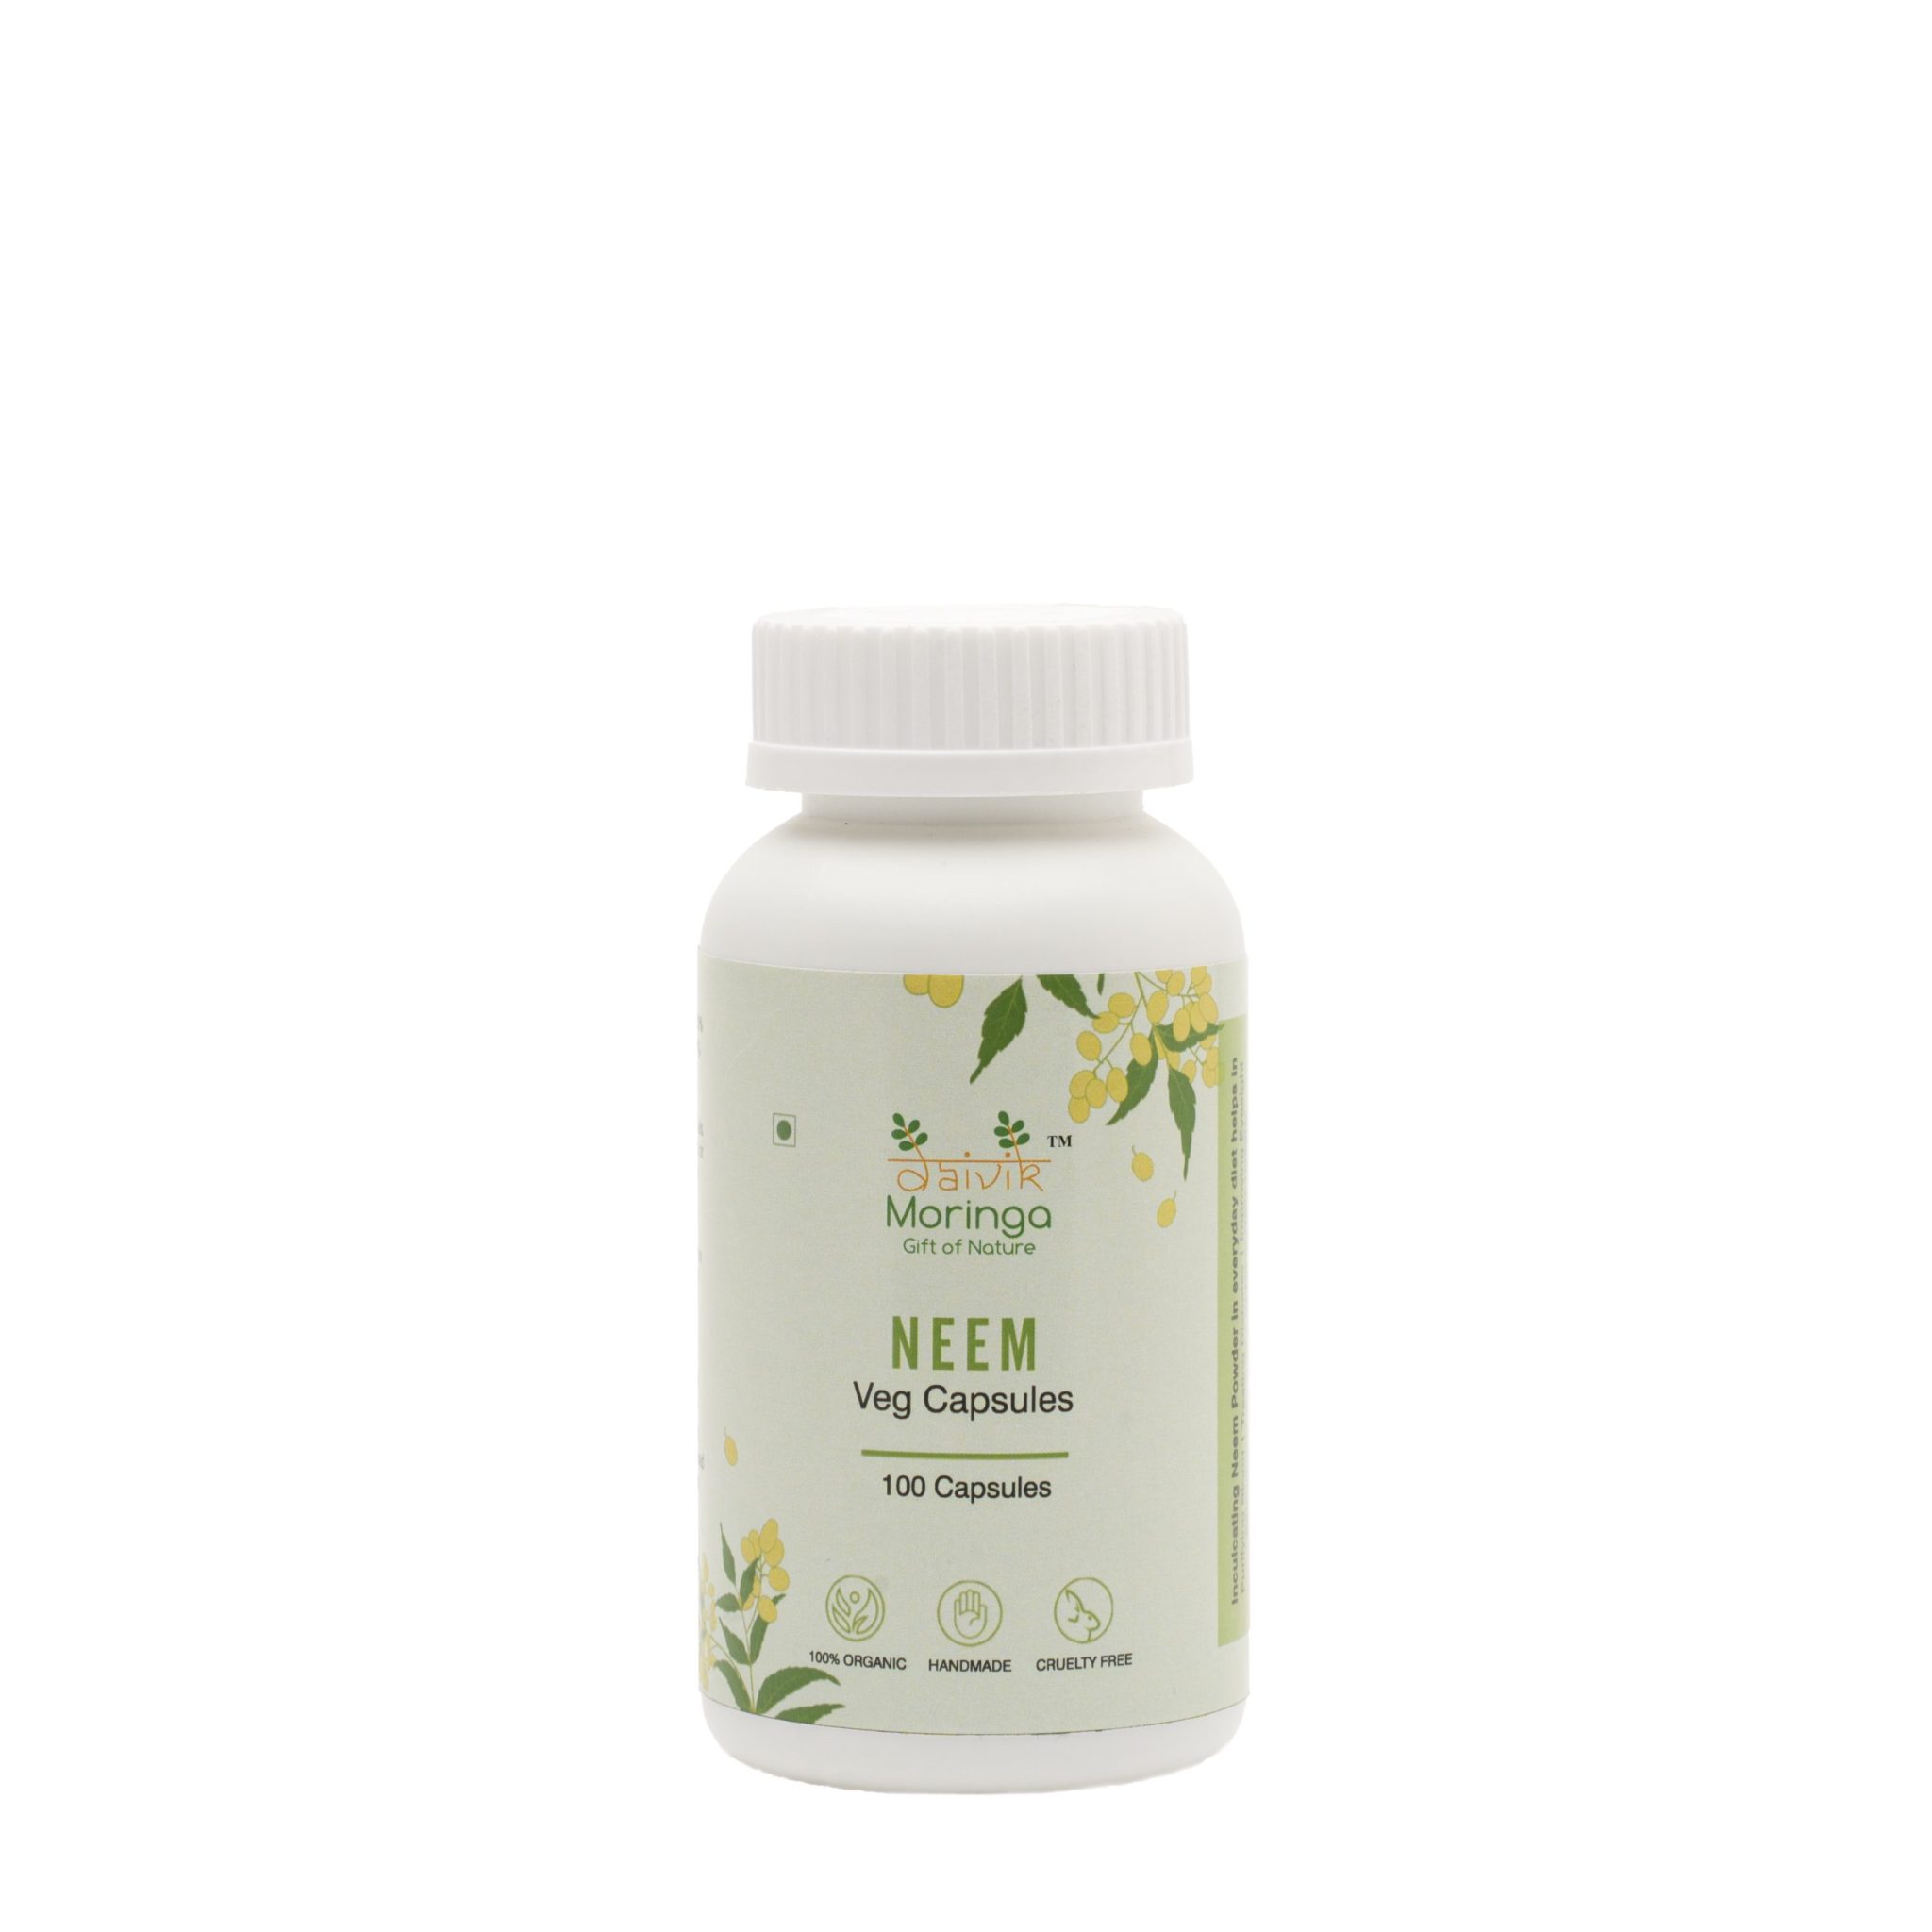 Product: Daivik Moringa Neem Veg Capsules | 100% Natural | Detox, Skin Care, Anti Inflammatory | 100 Caps Each